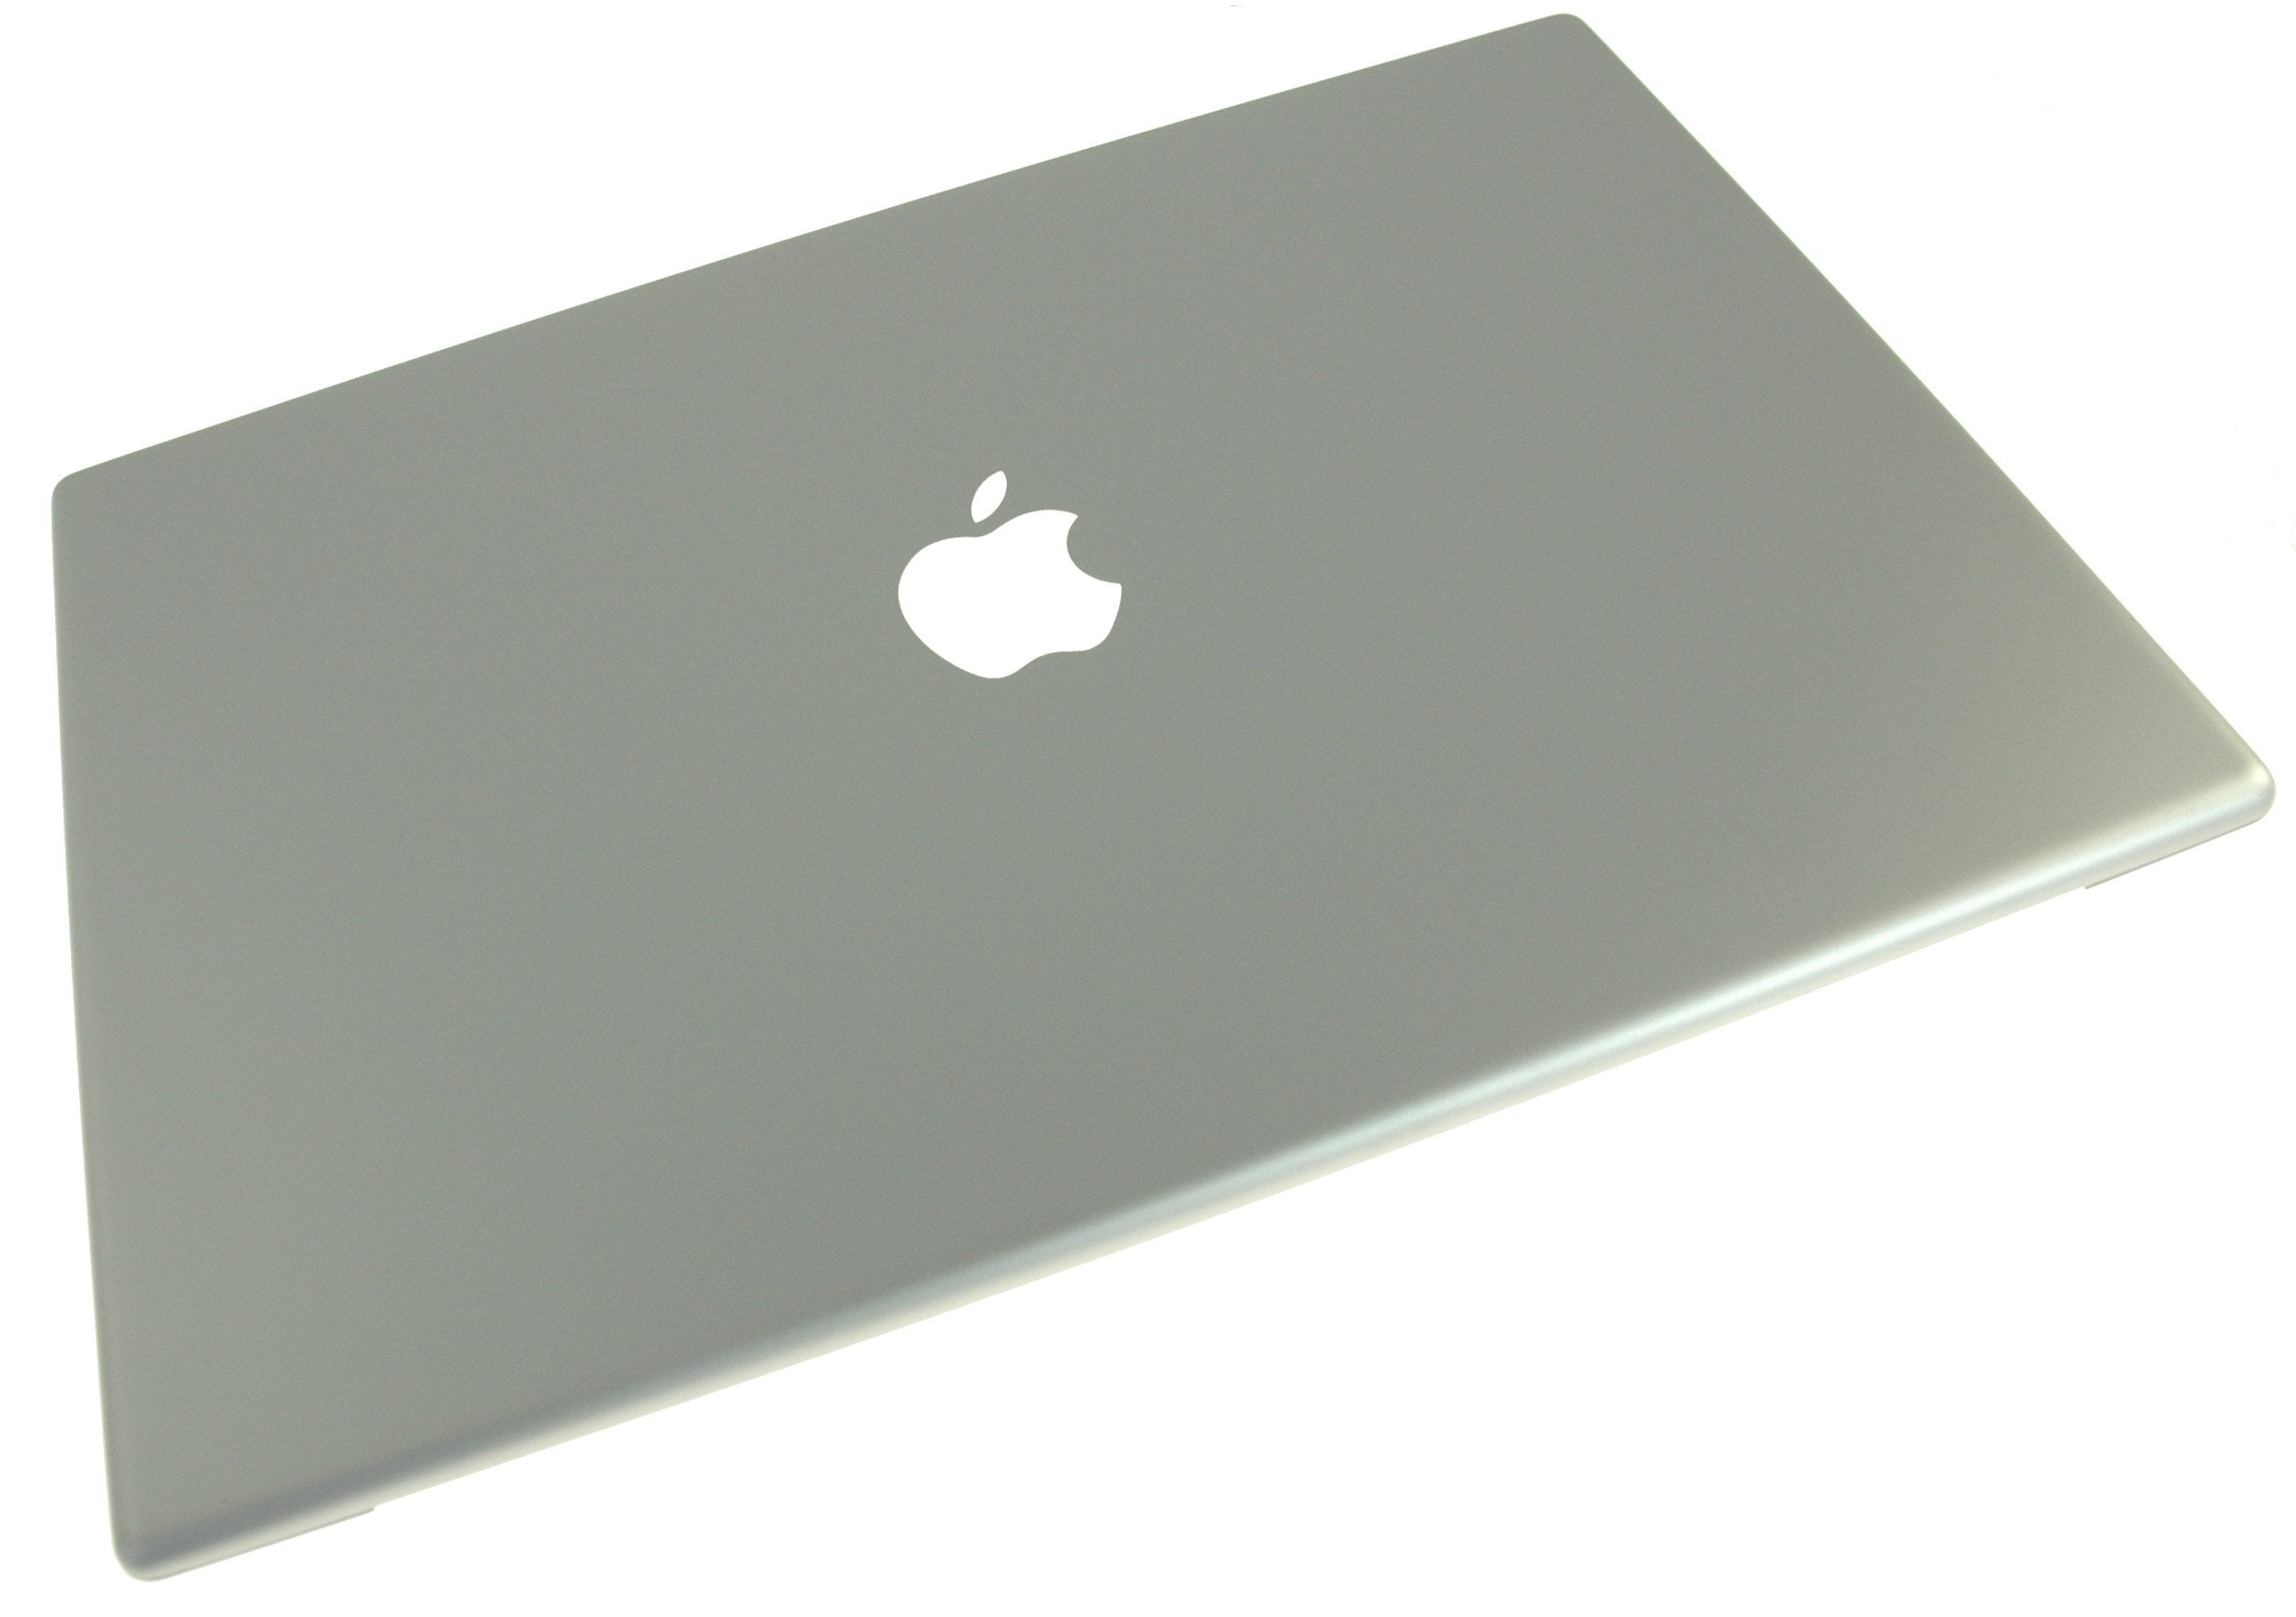 MacBook Pro 15" (Models A1150/A1211) Rear Display Bezel